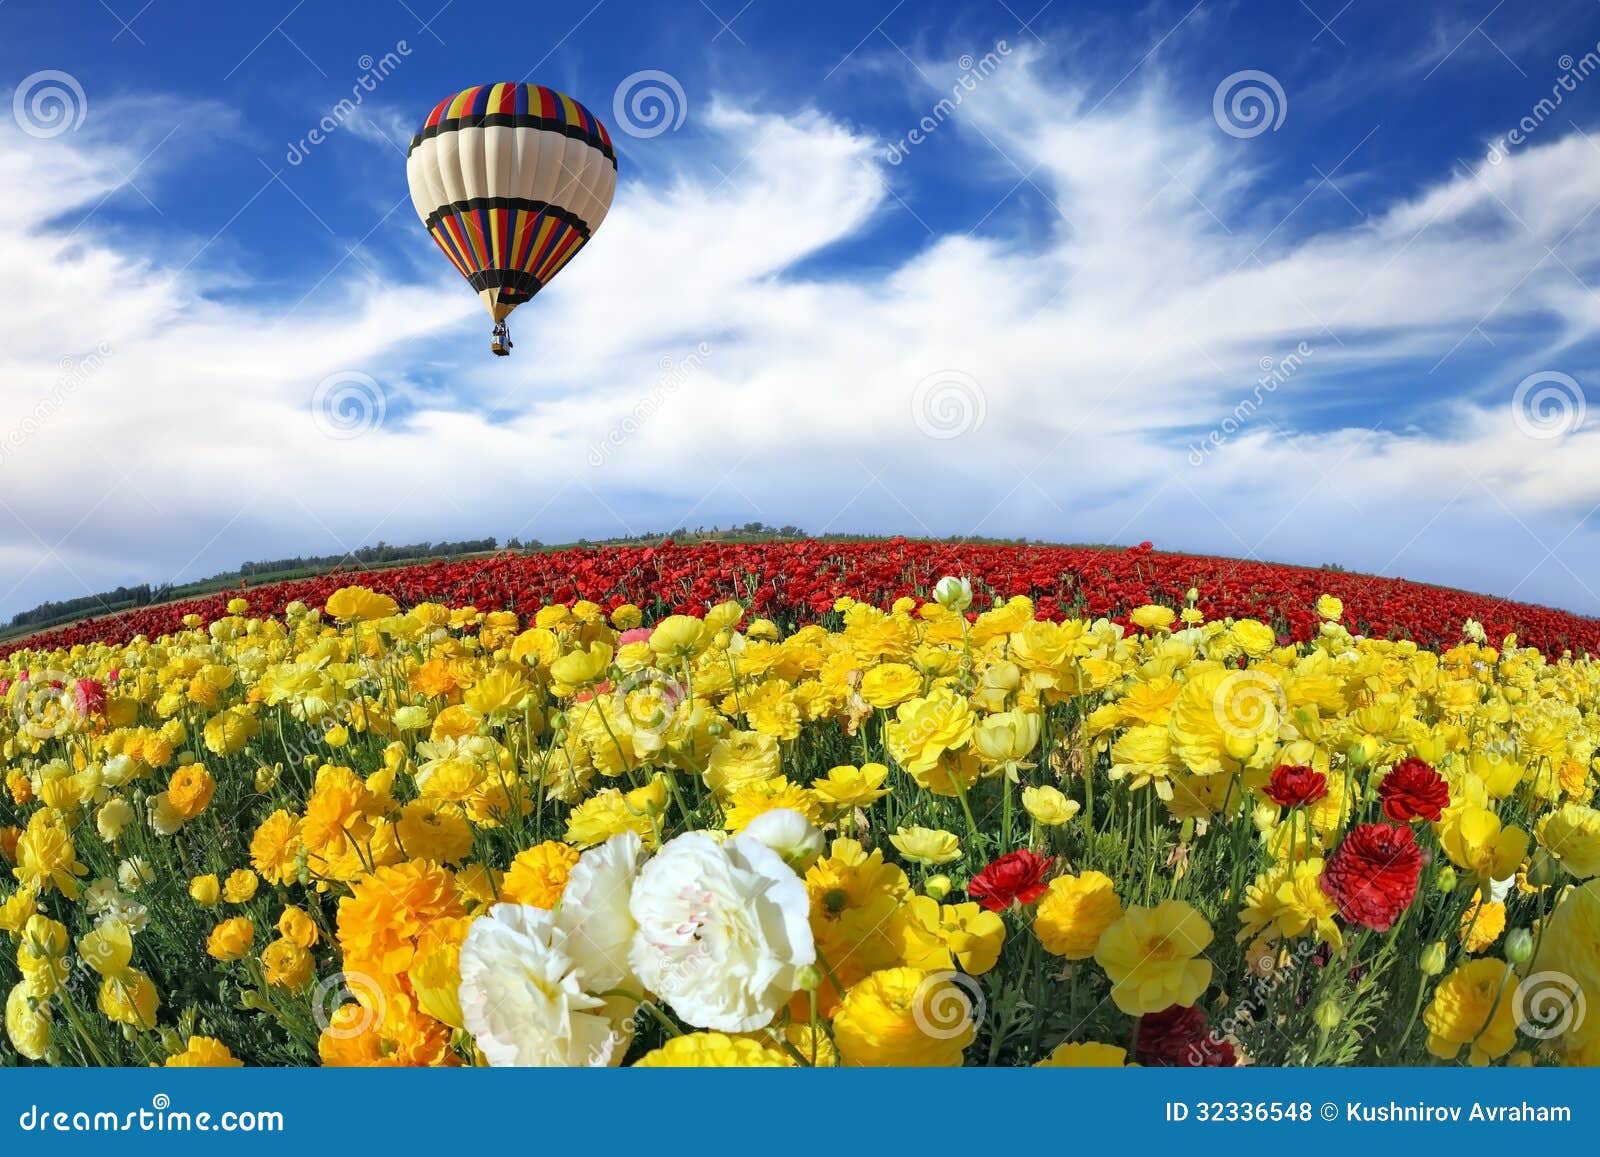 Wonderful spring mood stock photo. Image of flying, landscape - 32336548